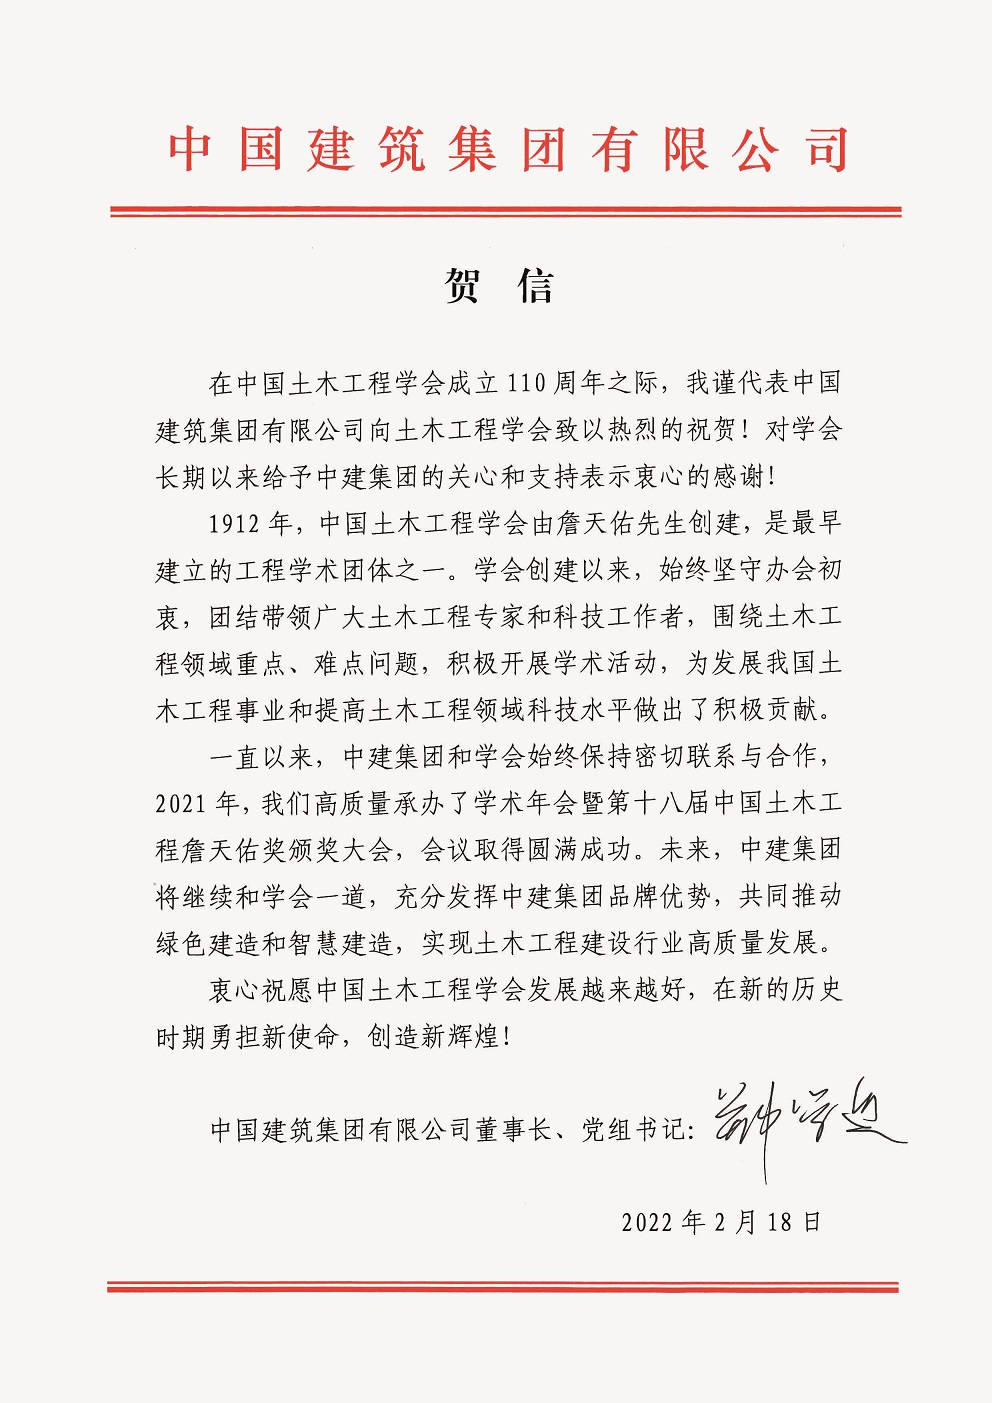 中国建筑集团有限公司董事长、党组书记郑学选贺信